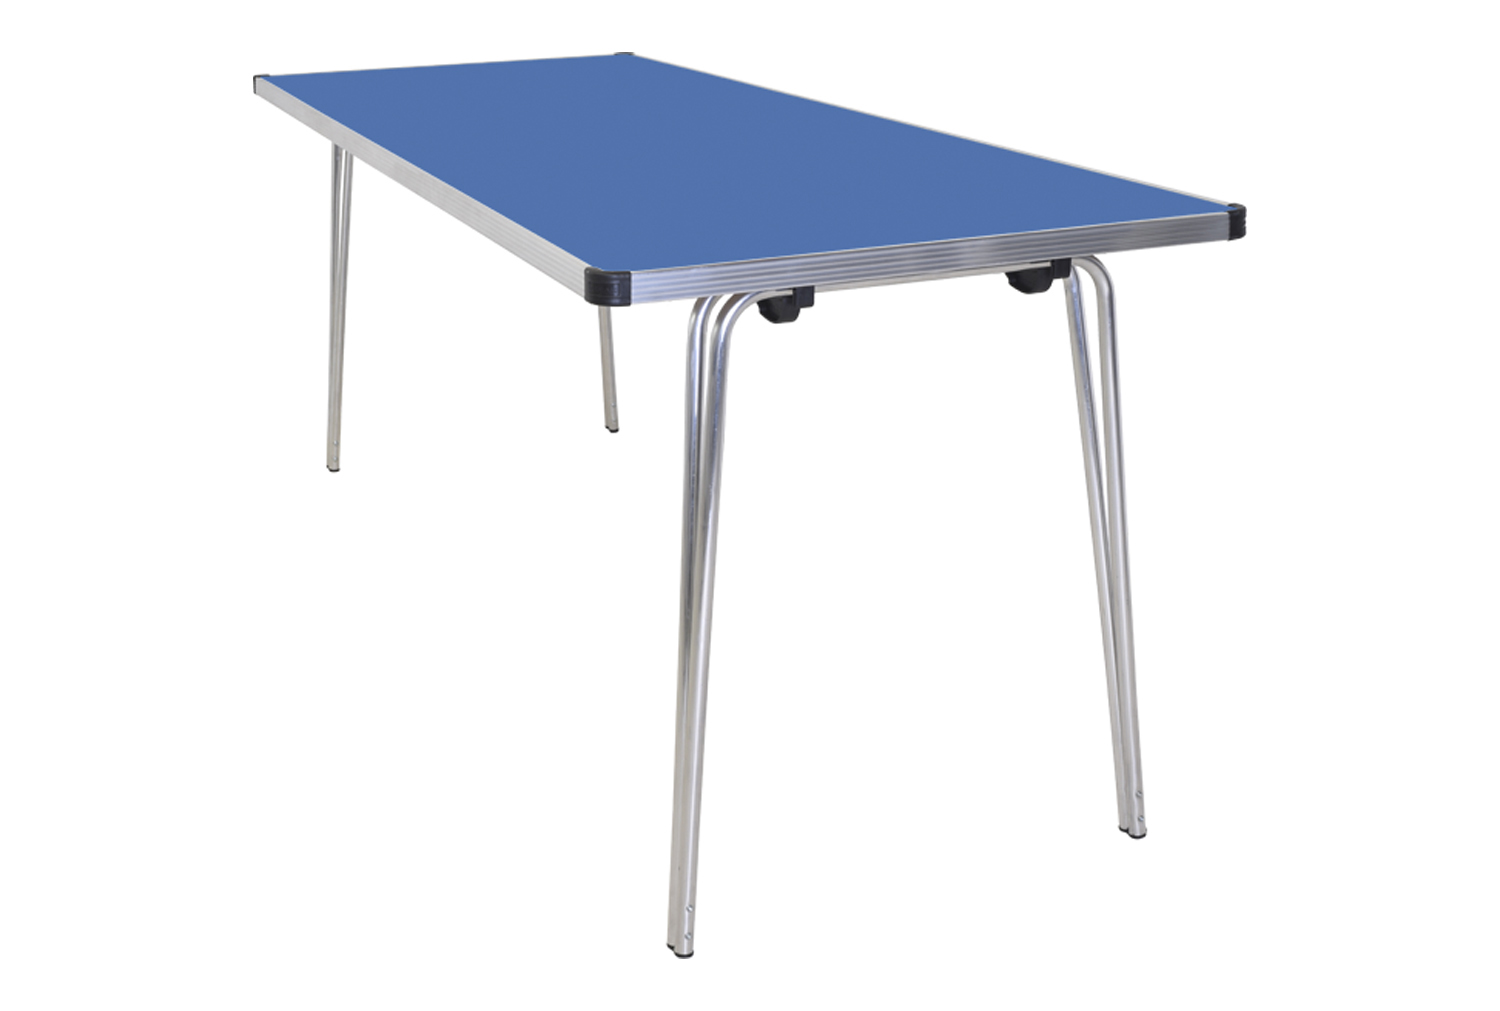 Gopak Contour Folding Table, 183wx61d (cm), Azure Blue